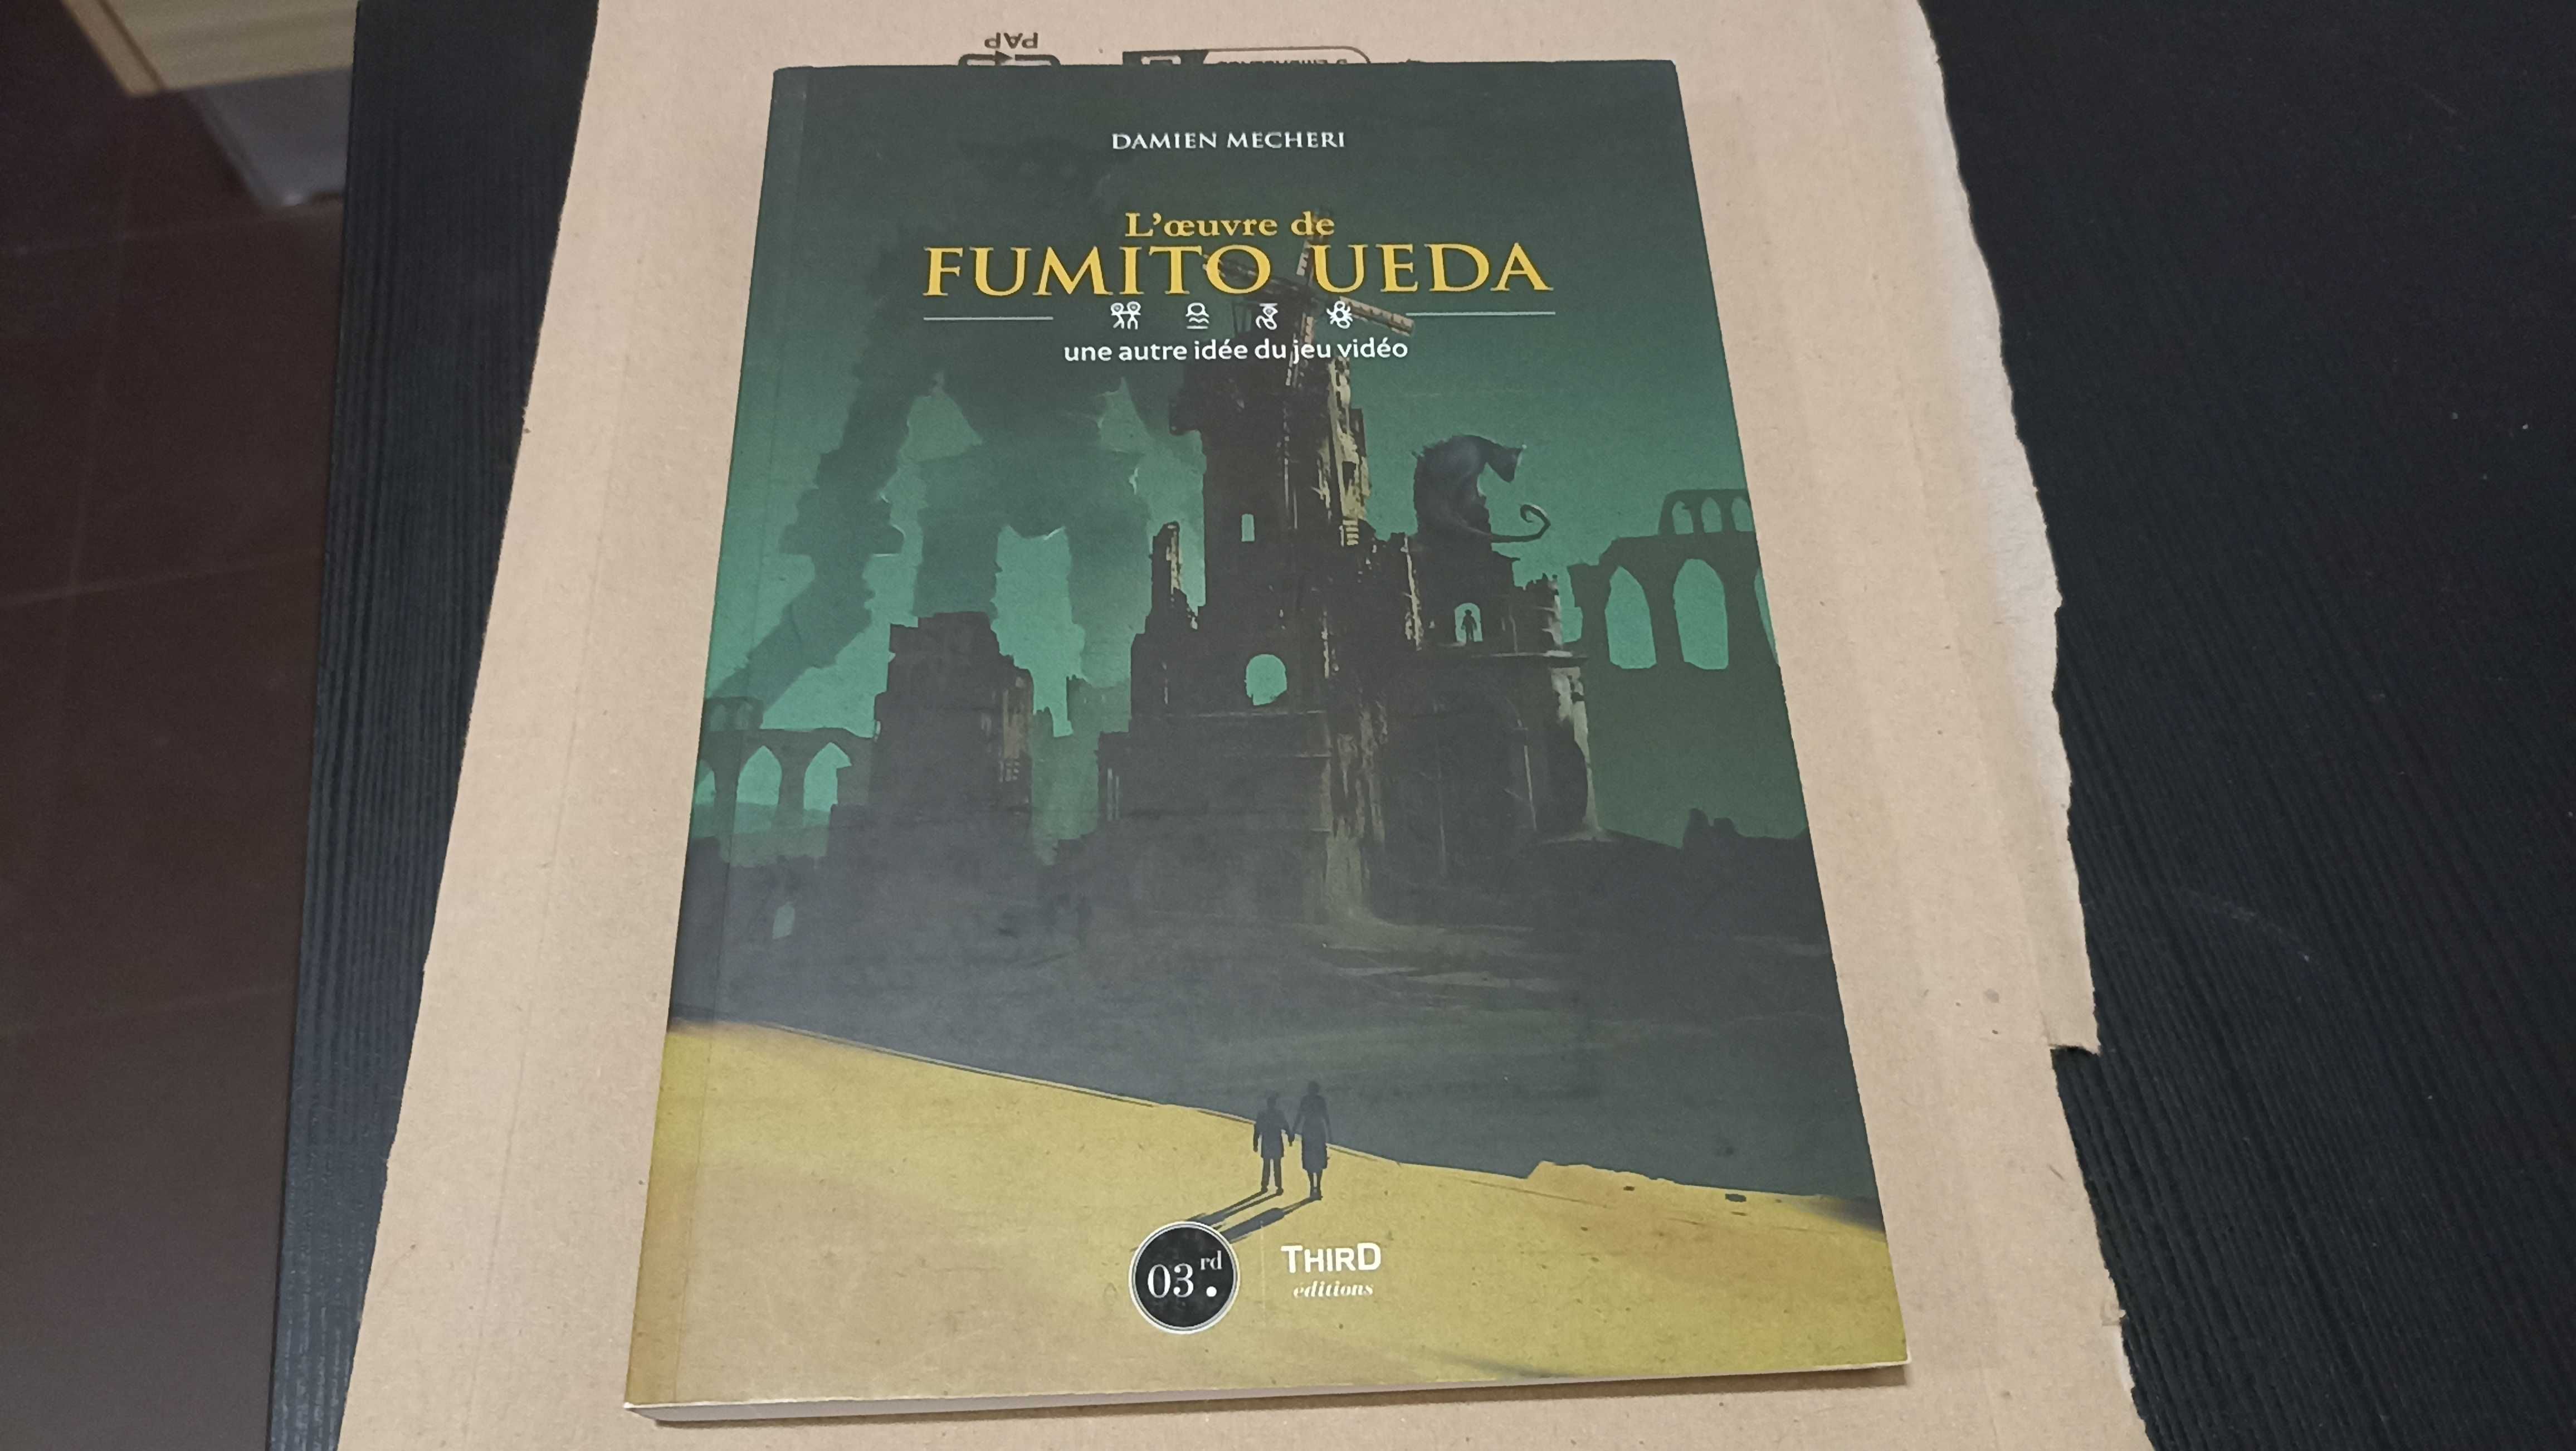 Livro "The Works of Fumito Ueda" Edição Francesa